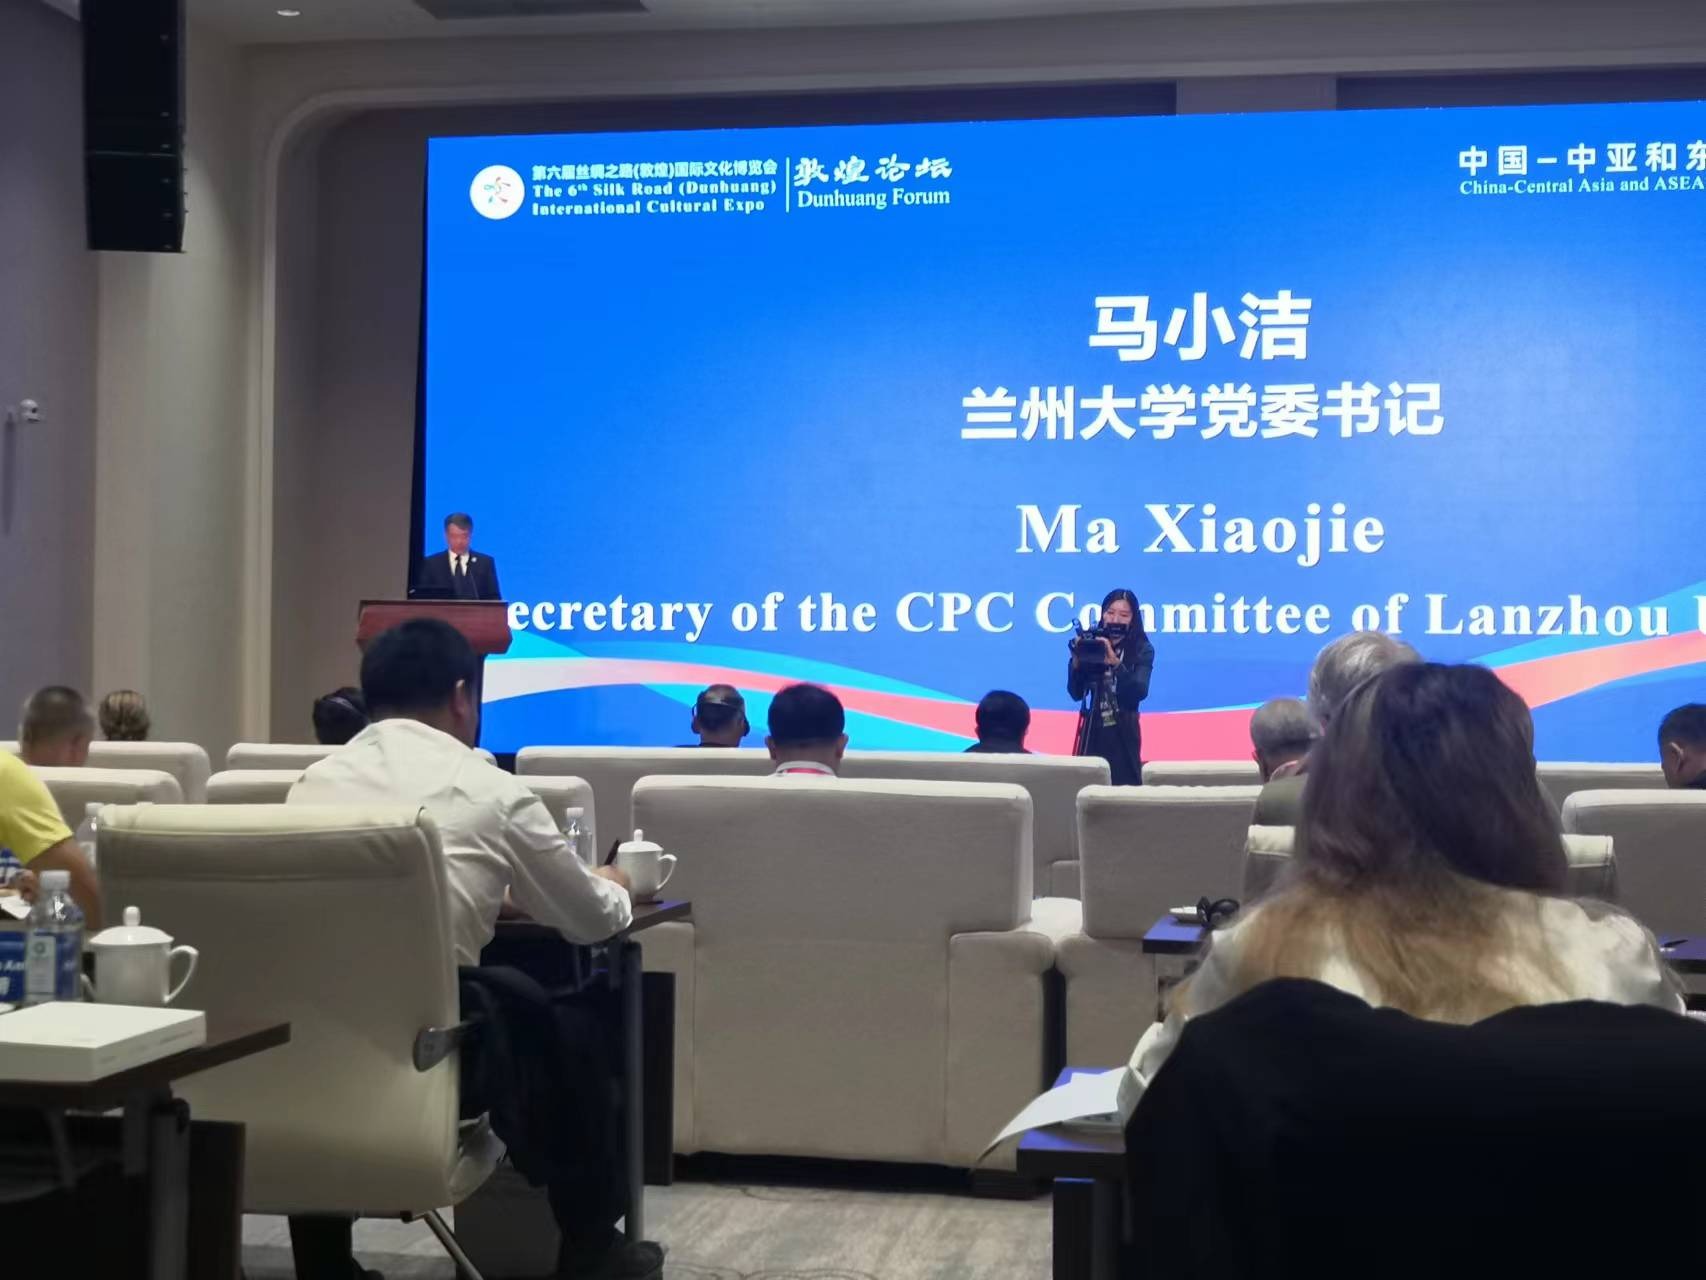 马小洁:为构建中国—中亚和东盟深化共赢发展的命运共同体提供坚实可靠的学术支撑